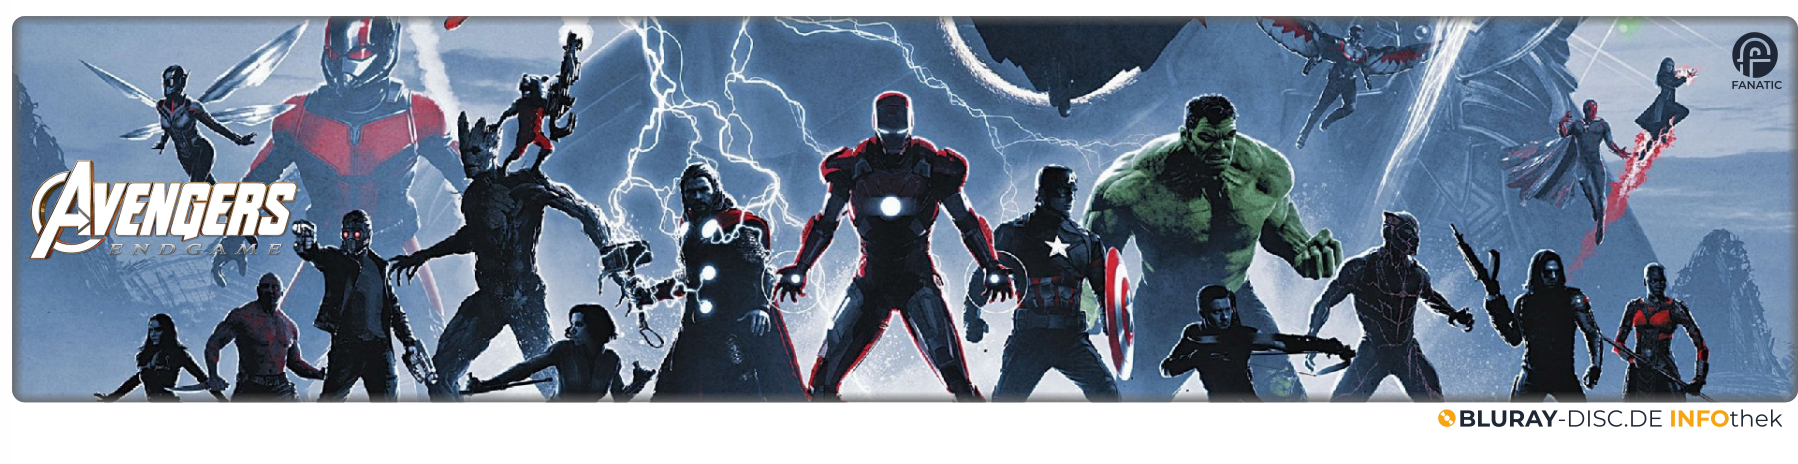 Avengers_-_Endgame.png